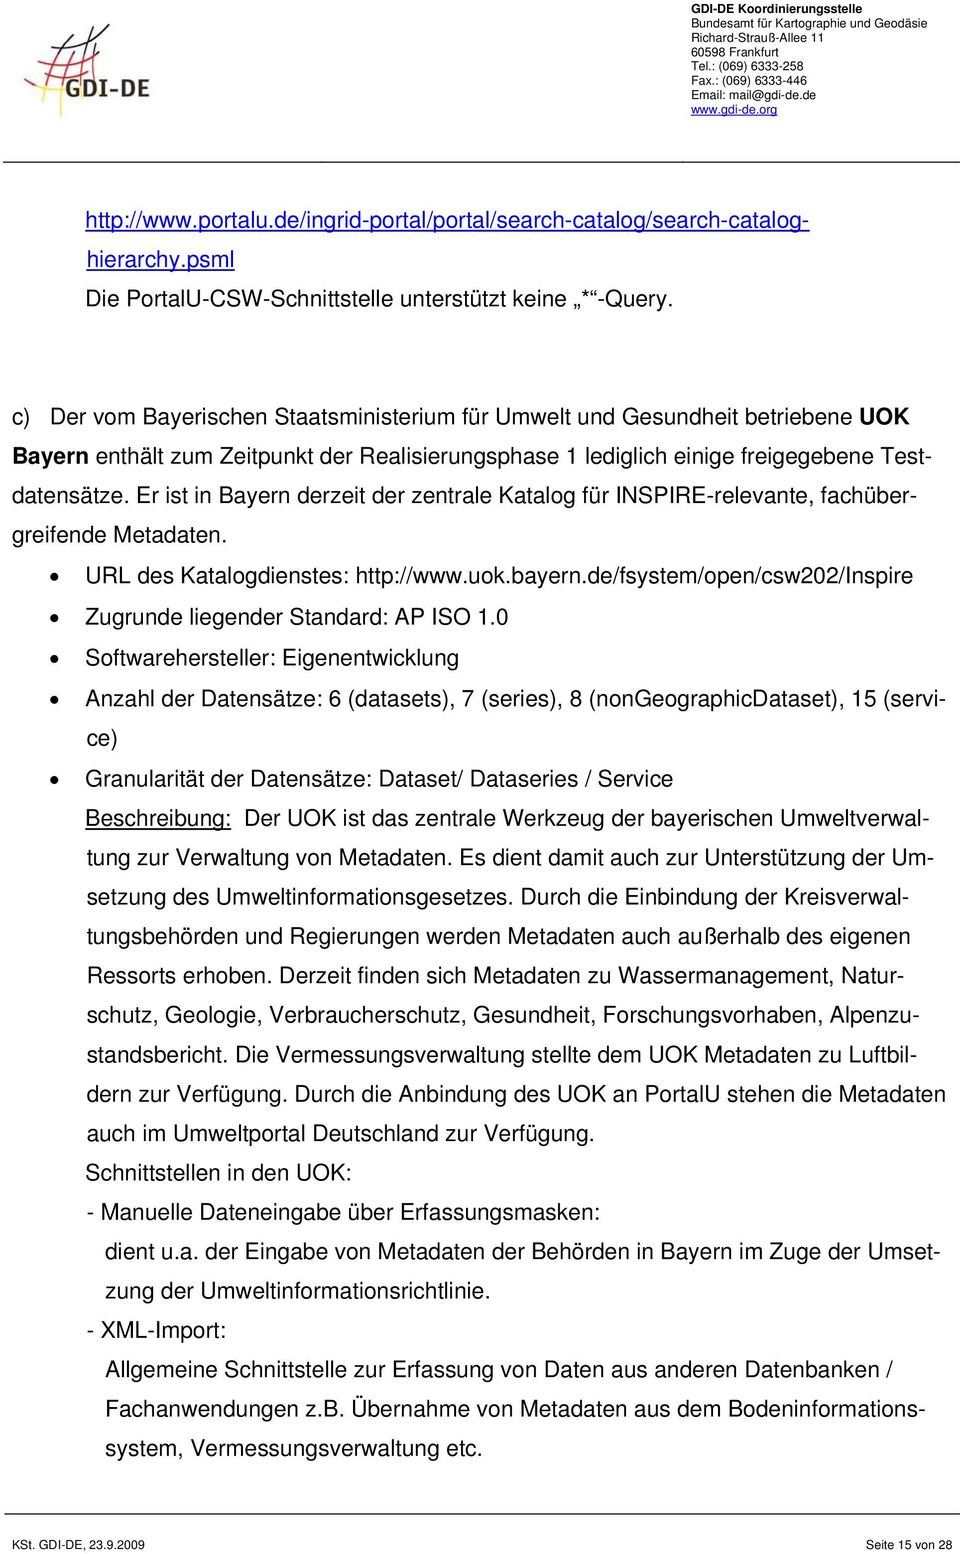 Er ist in Bayern derzeit der zentrale Katalog für INSPIRE-relevante, fachübergreifende Metadaten. URL des Katalogdienstes: http://www.uok.bayern.